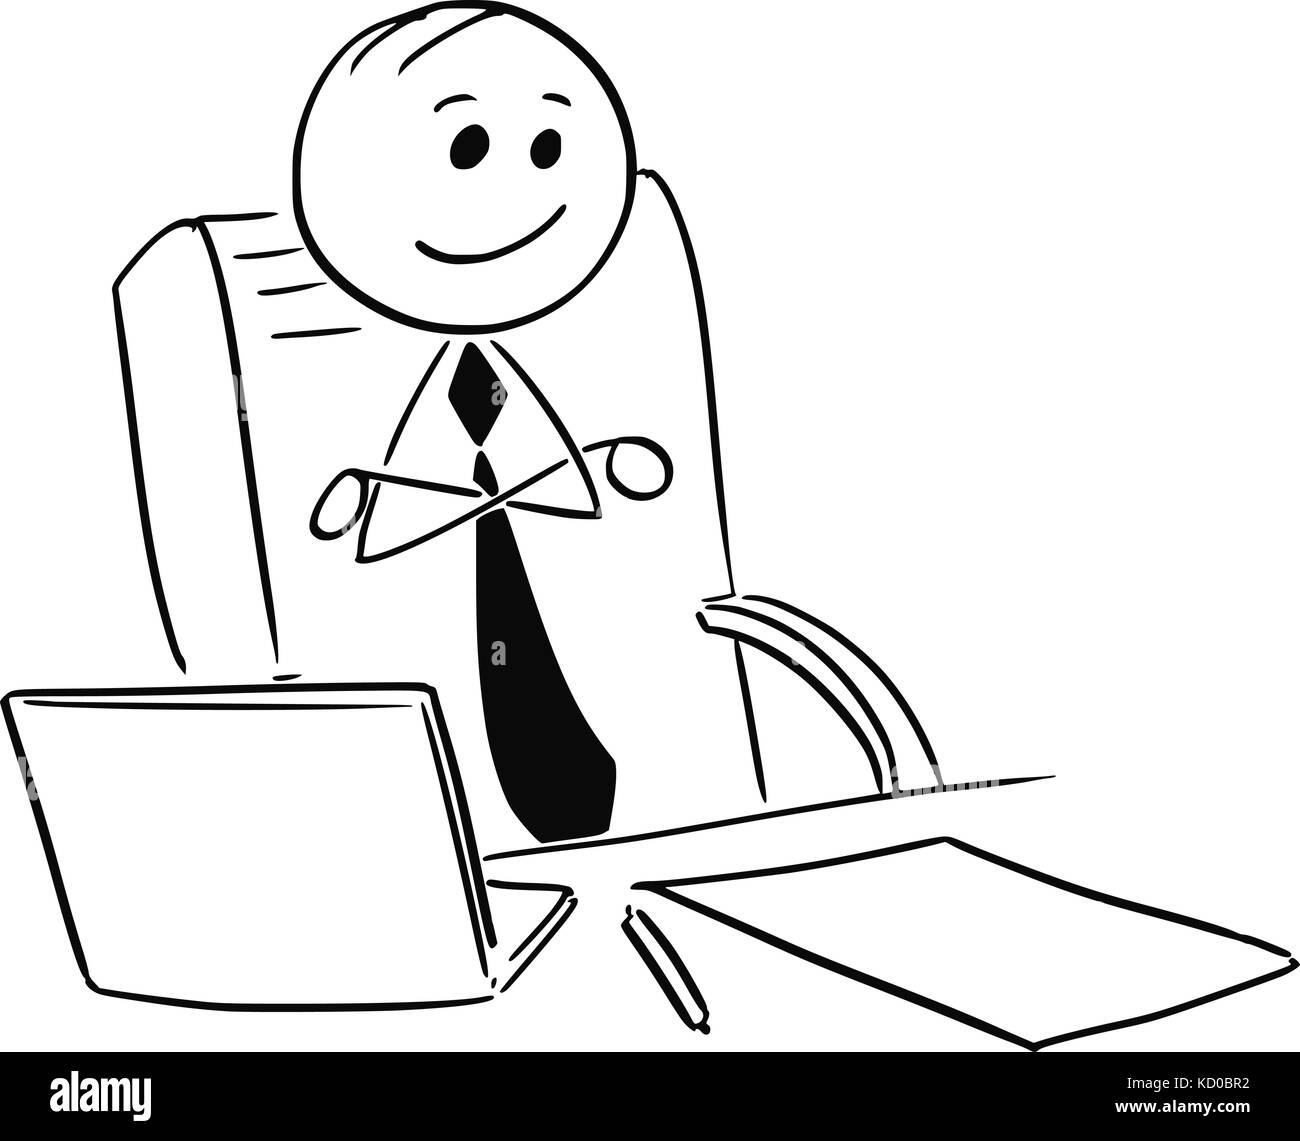 Cartoon stick Mann Abbildung: zufrieden zufrieden zufrieden Geschäftsmann oder Chef oder Manager im Büro mit verschränkten Armen. Stock Vektor